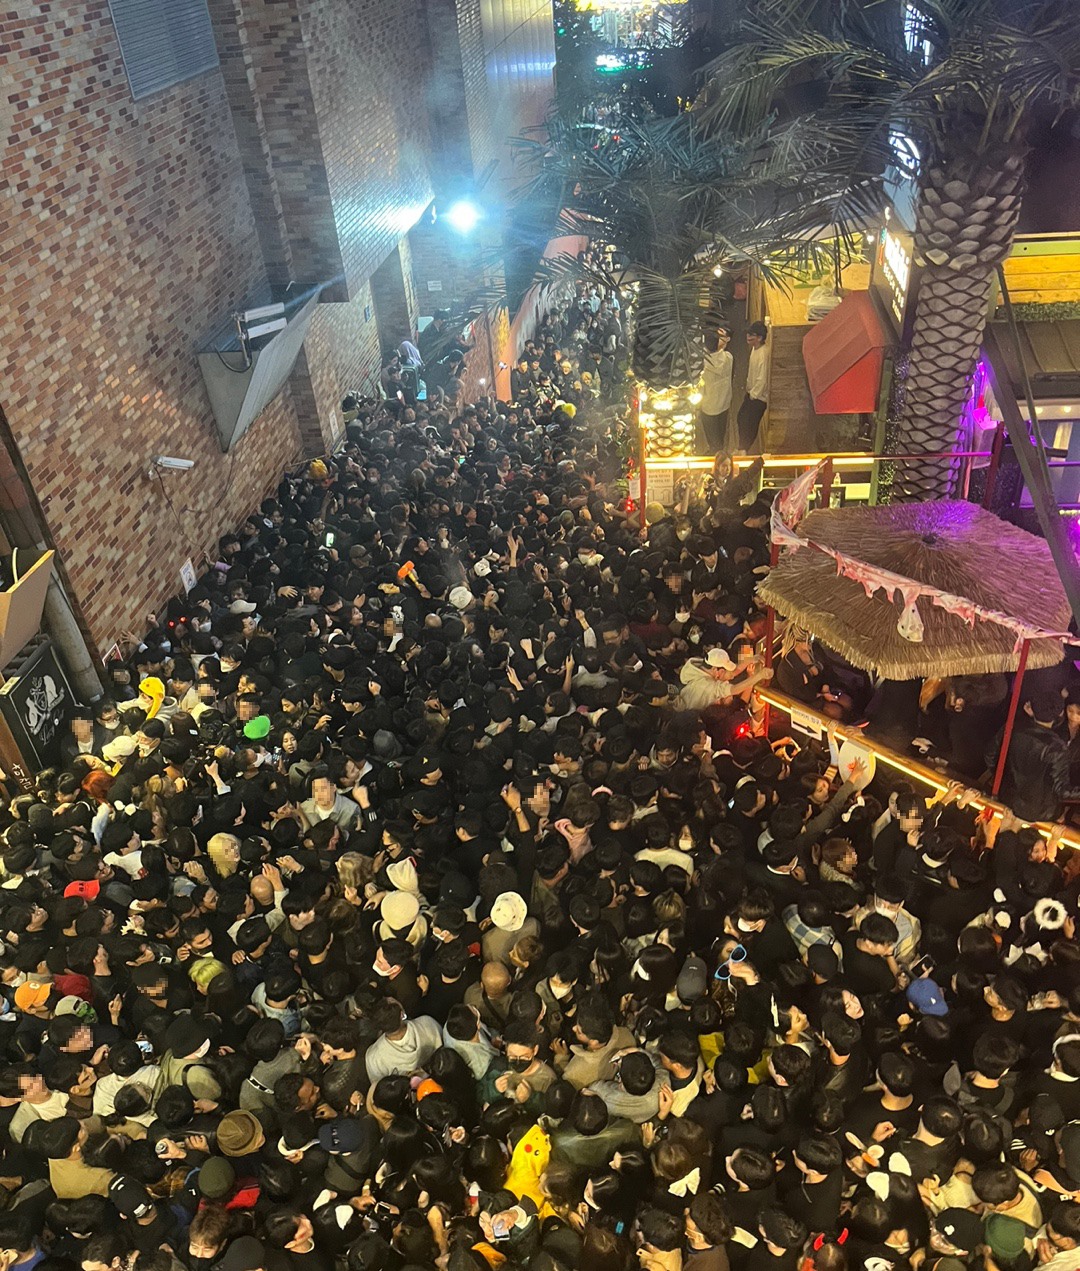 Sau 1 năm từ thảm kịch giẫm đạp trong hẻm nhỏ ở Itaewon, người Hàn Quốc 'khiếp vía' lễ hội Halloween? - ảnh 2